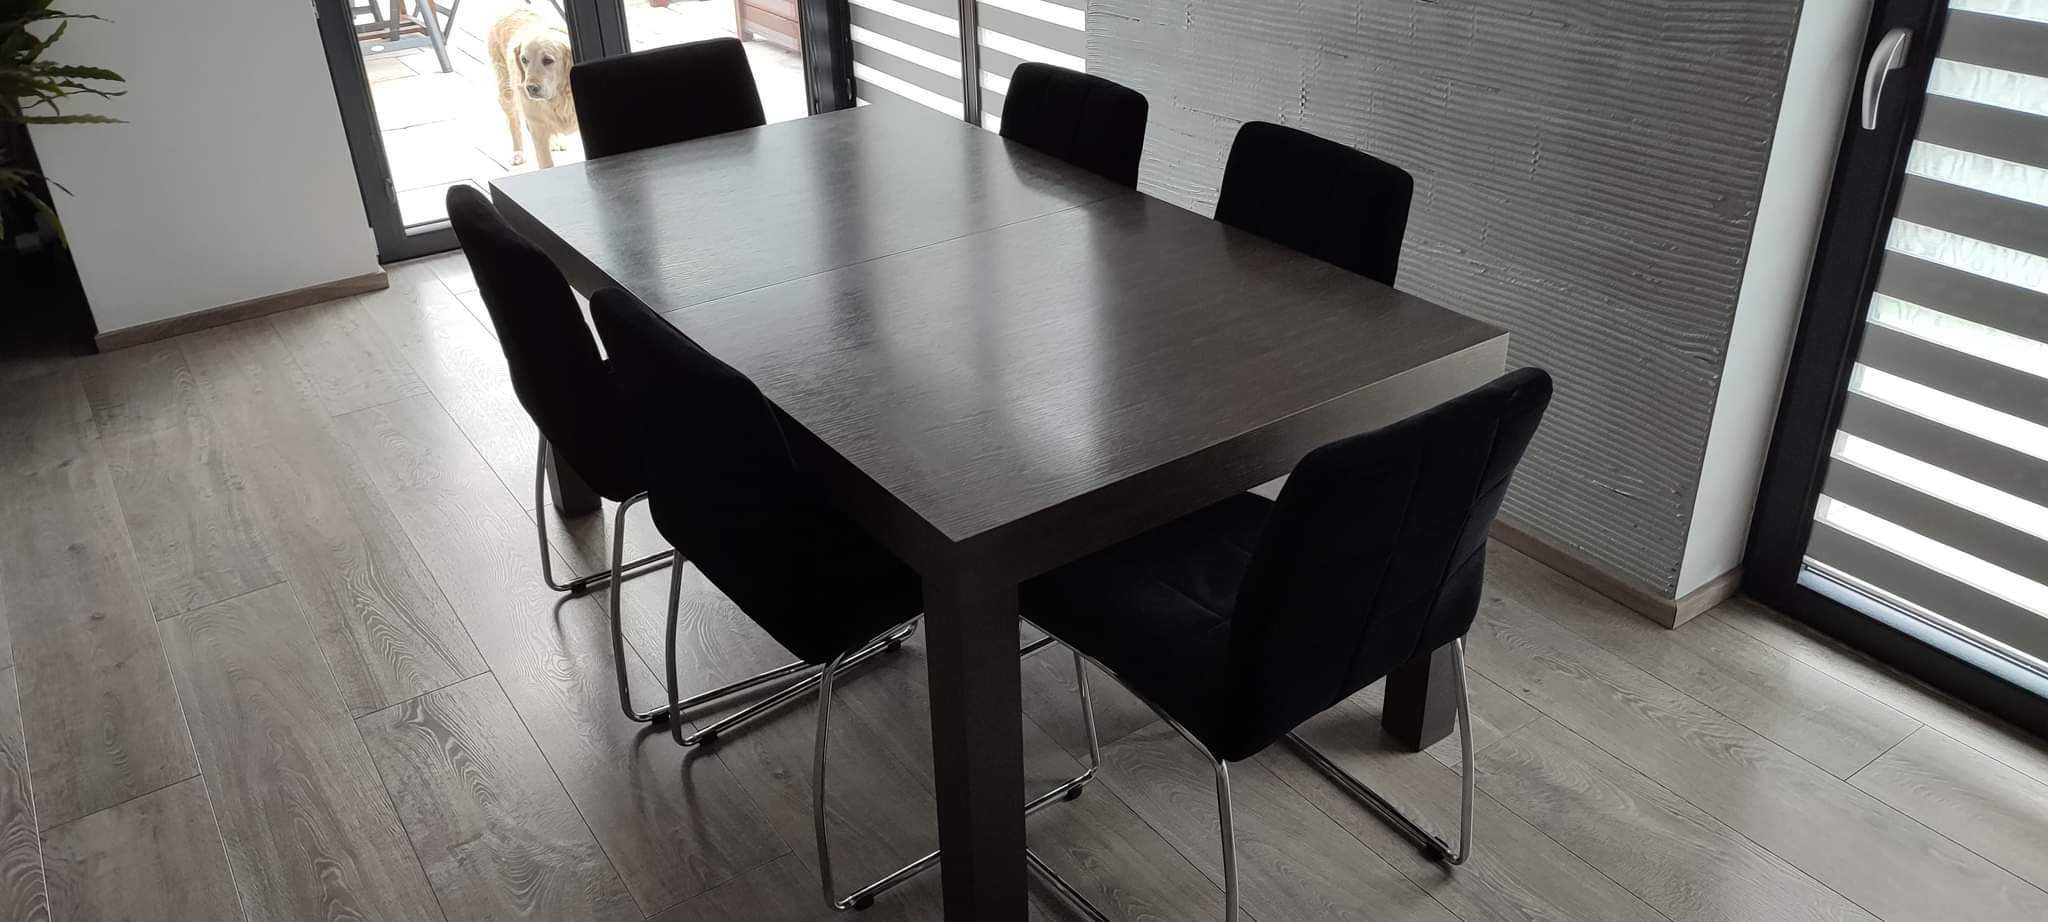 Stół rozkładany (nowy - kolor wenge)